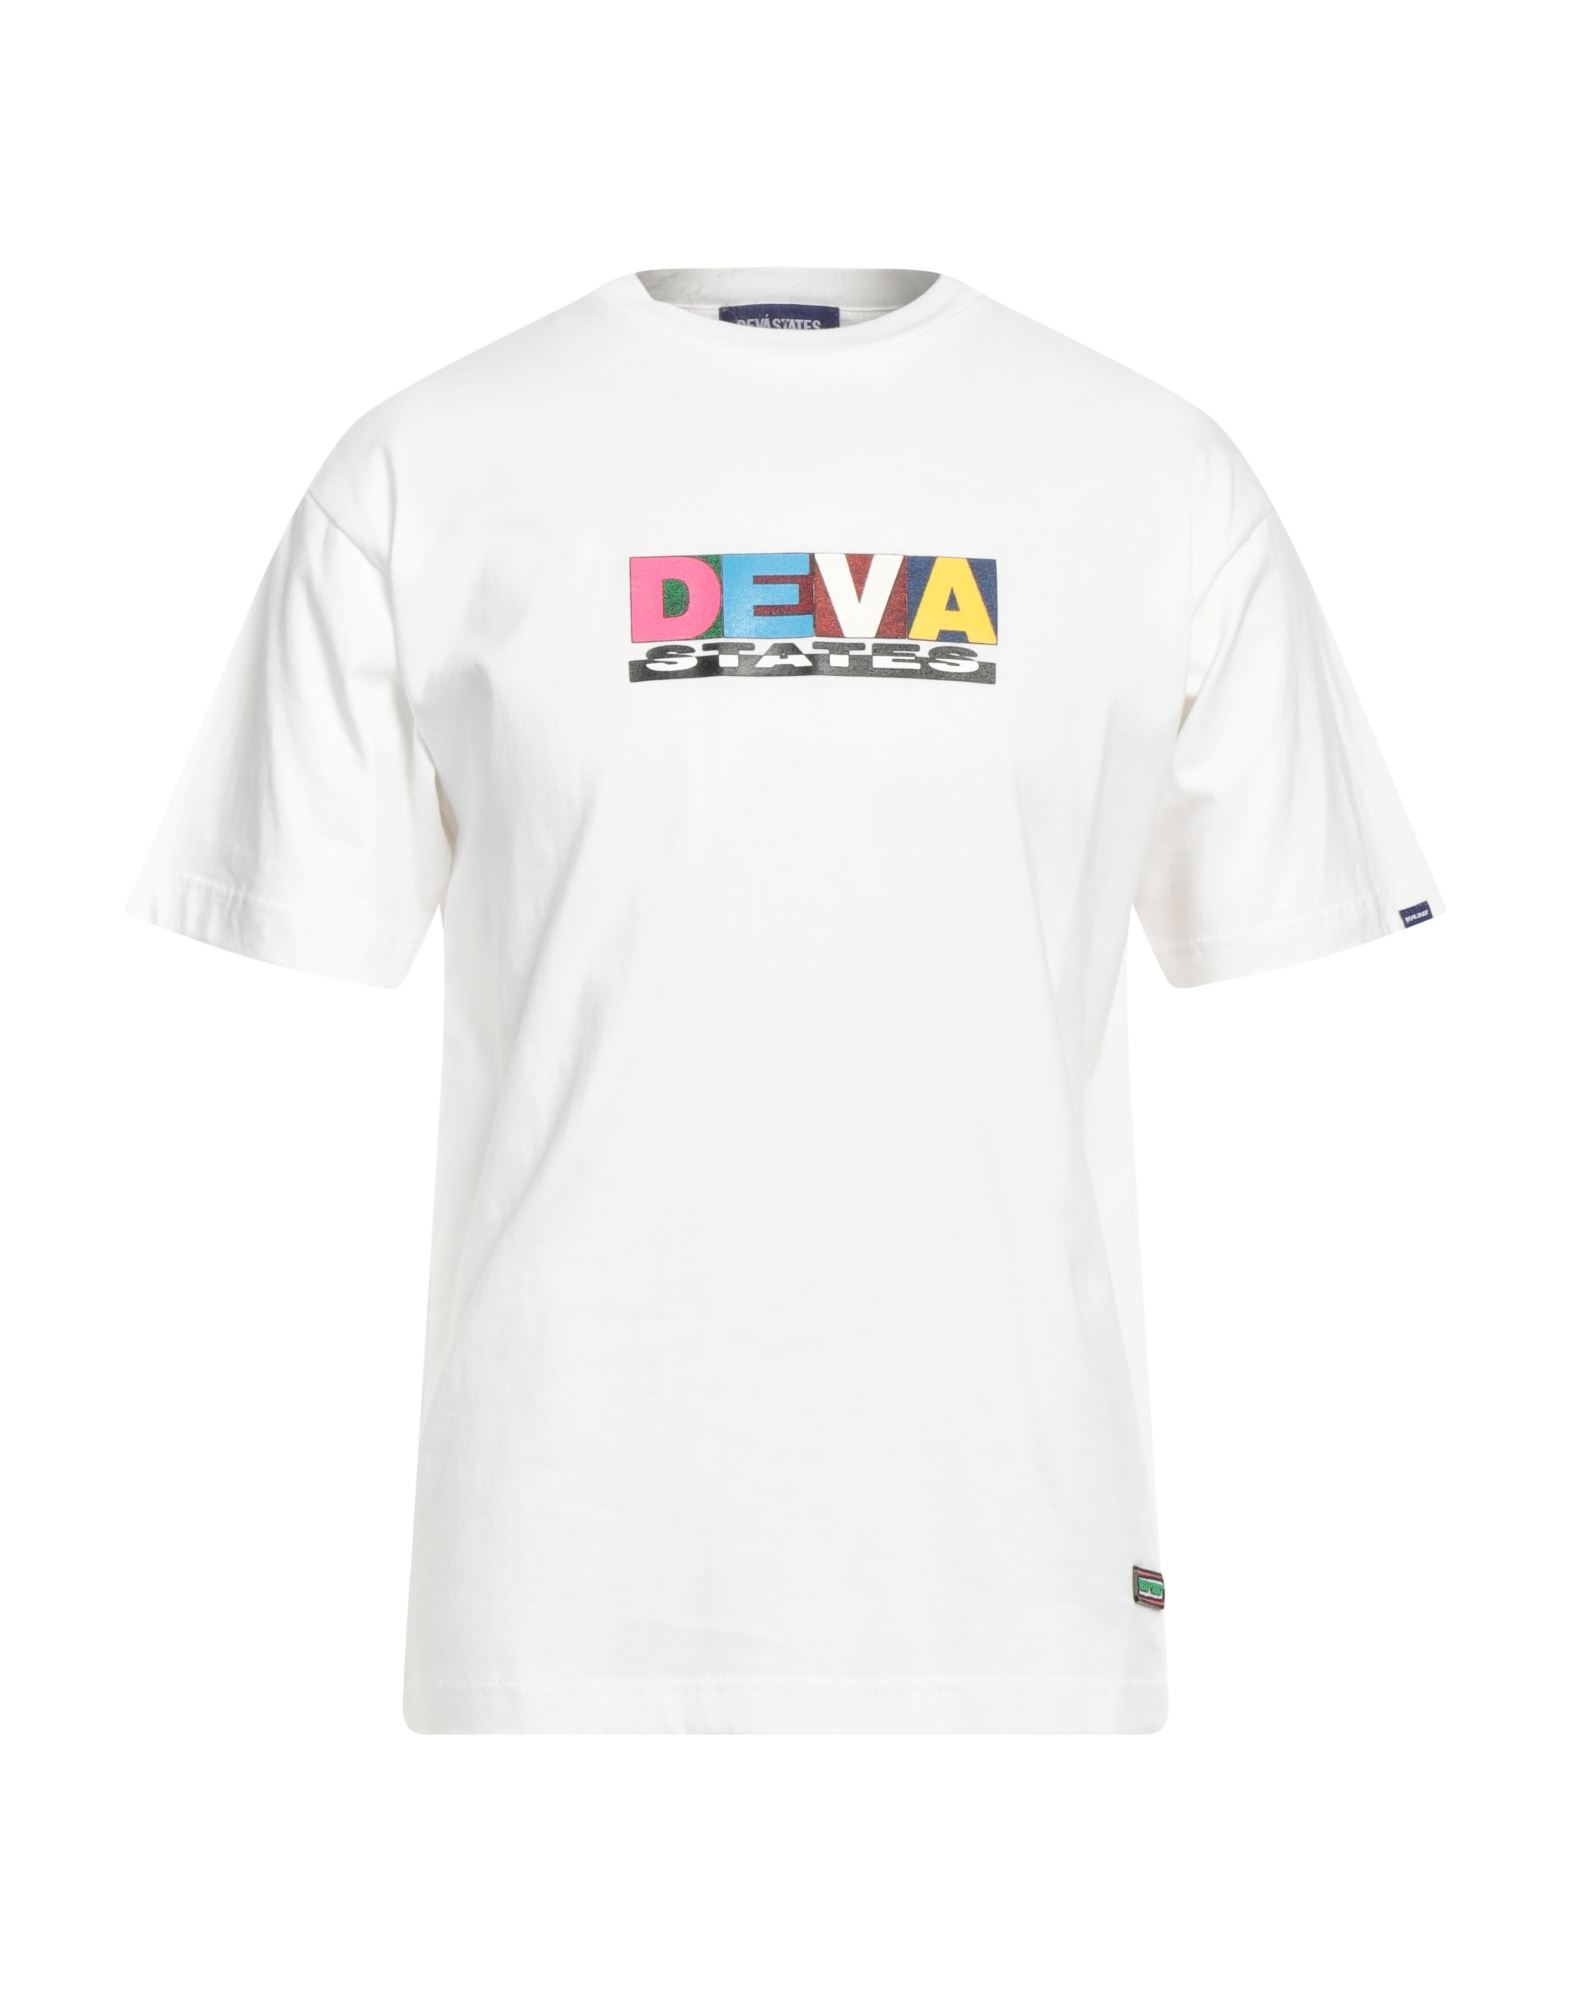 DEVÁ STATES T-shirts Herren Weiß von DEVÁ STATES